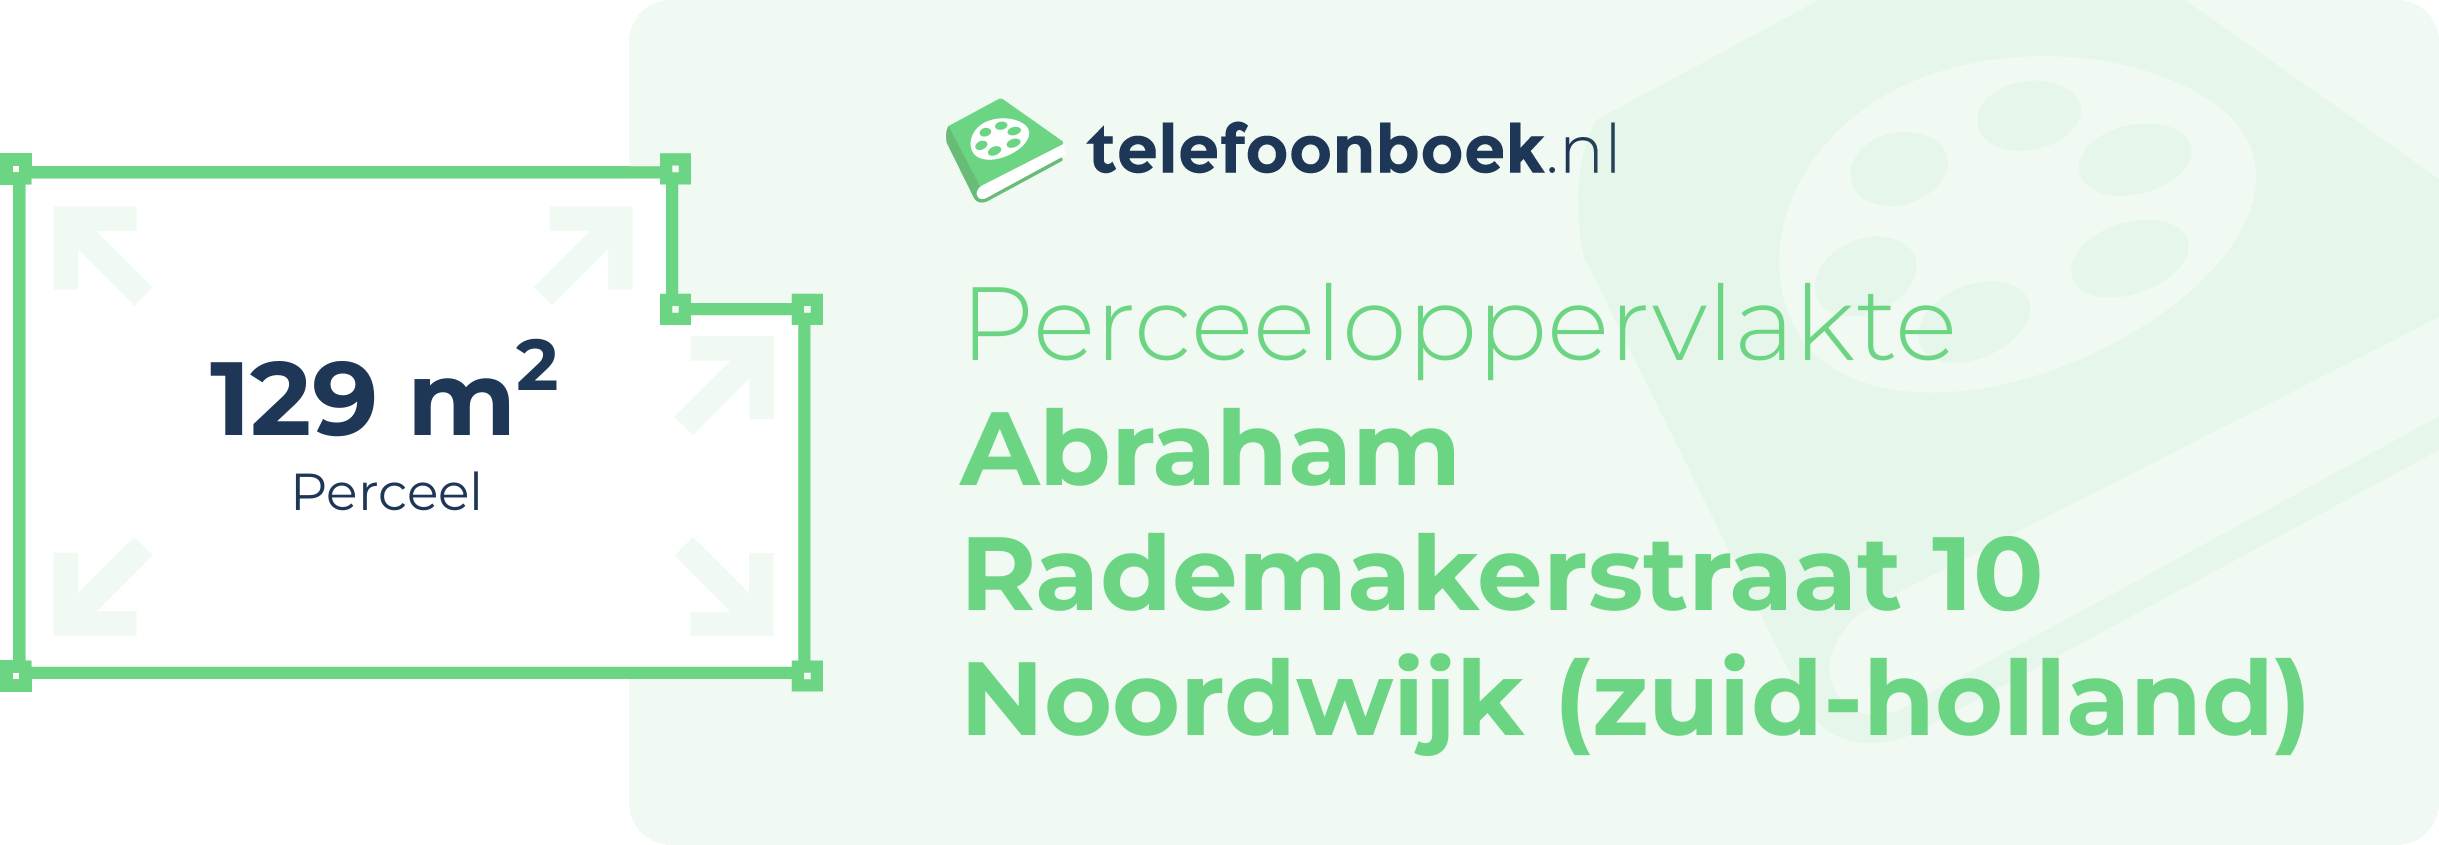 Perceeloppervlakte Abraham Rademakerstraat 10 Noordwijk (Zuid-Holland)